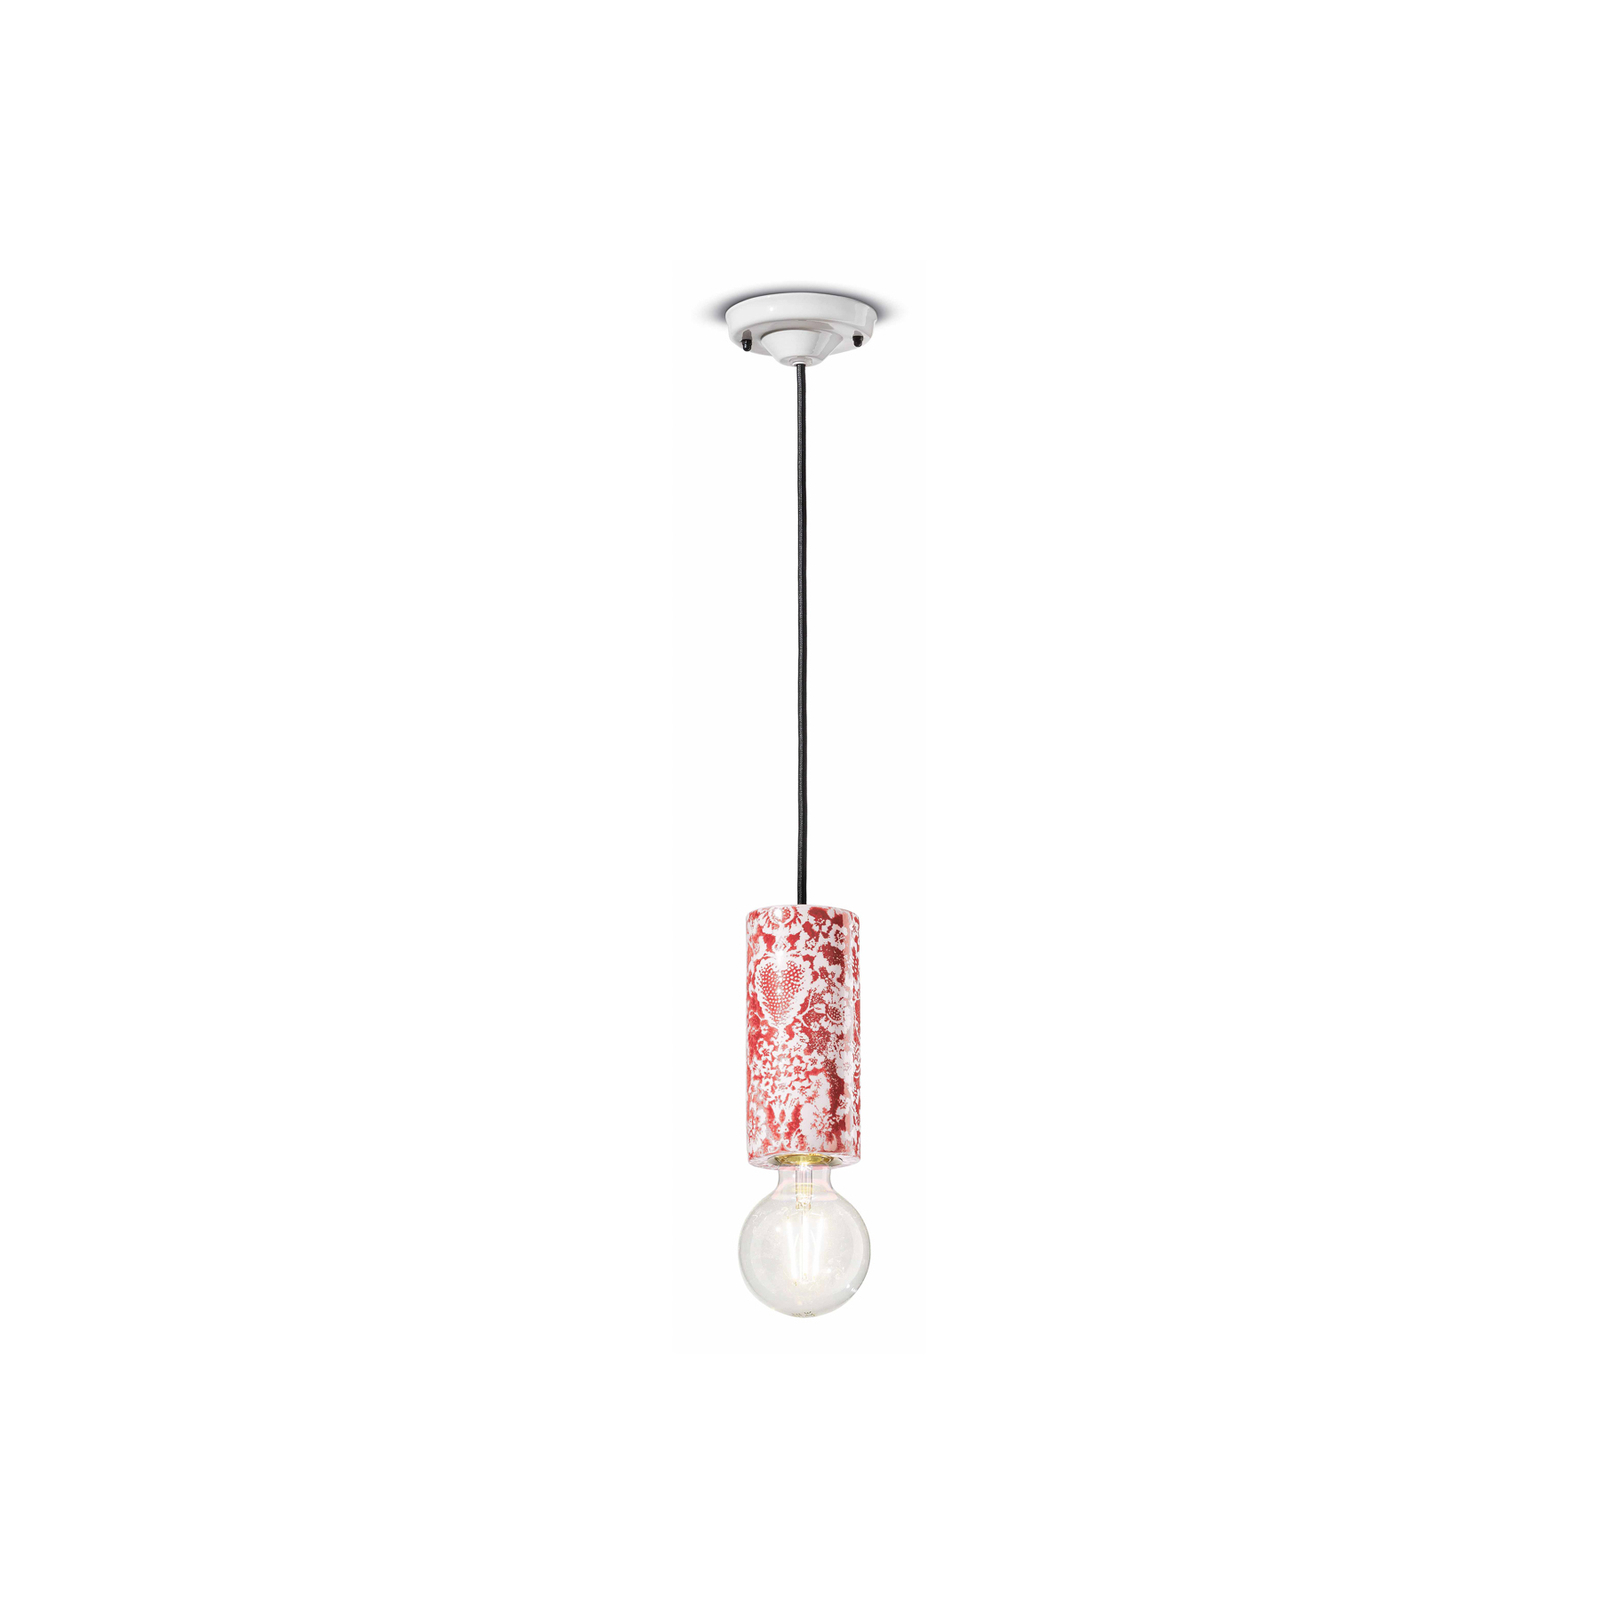 Viseća lampa PI, cvjetni uzorak Ø 8 cm crveno/bijela